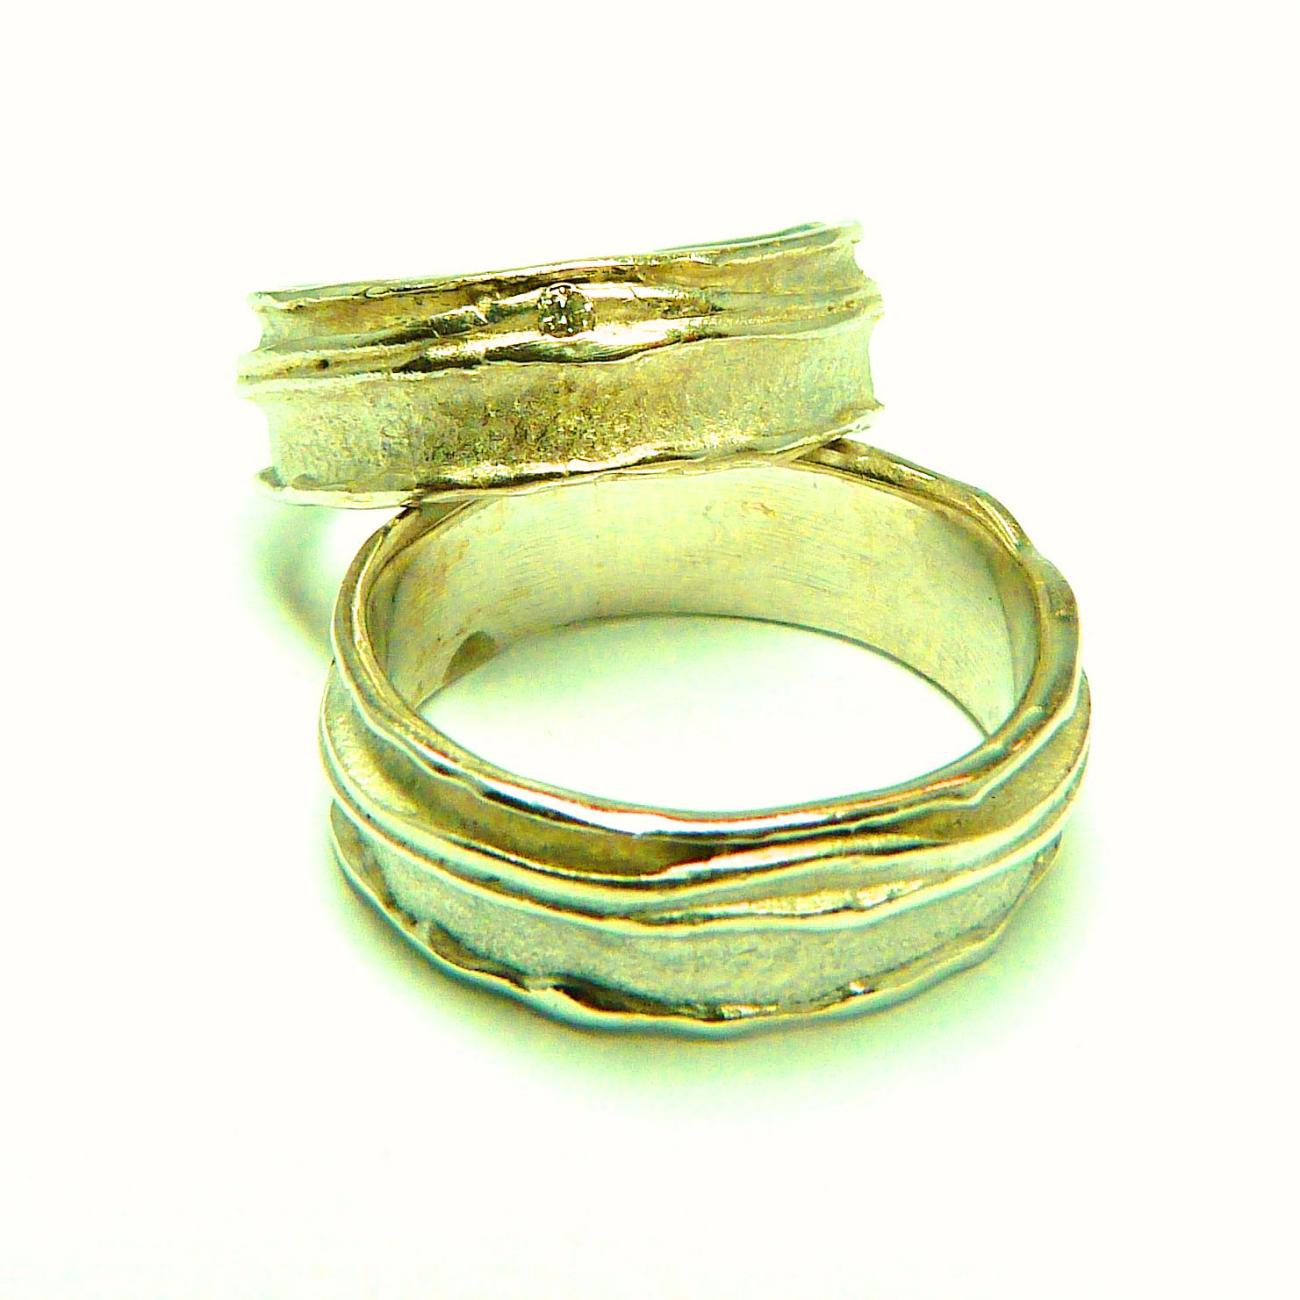 Een aantal lagen metaal op elkaar gesmeed resulteert in deze organische ringen Tussen twee organische randen vind je voor haar een diamantje Geel Goud - Diamant